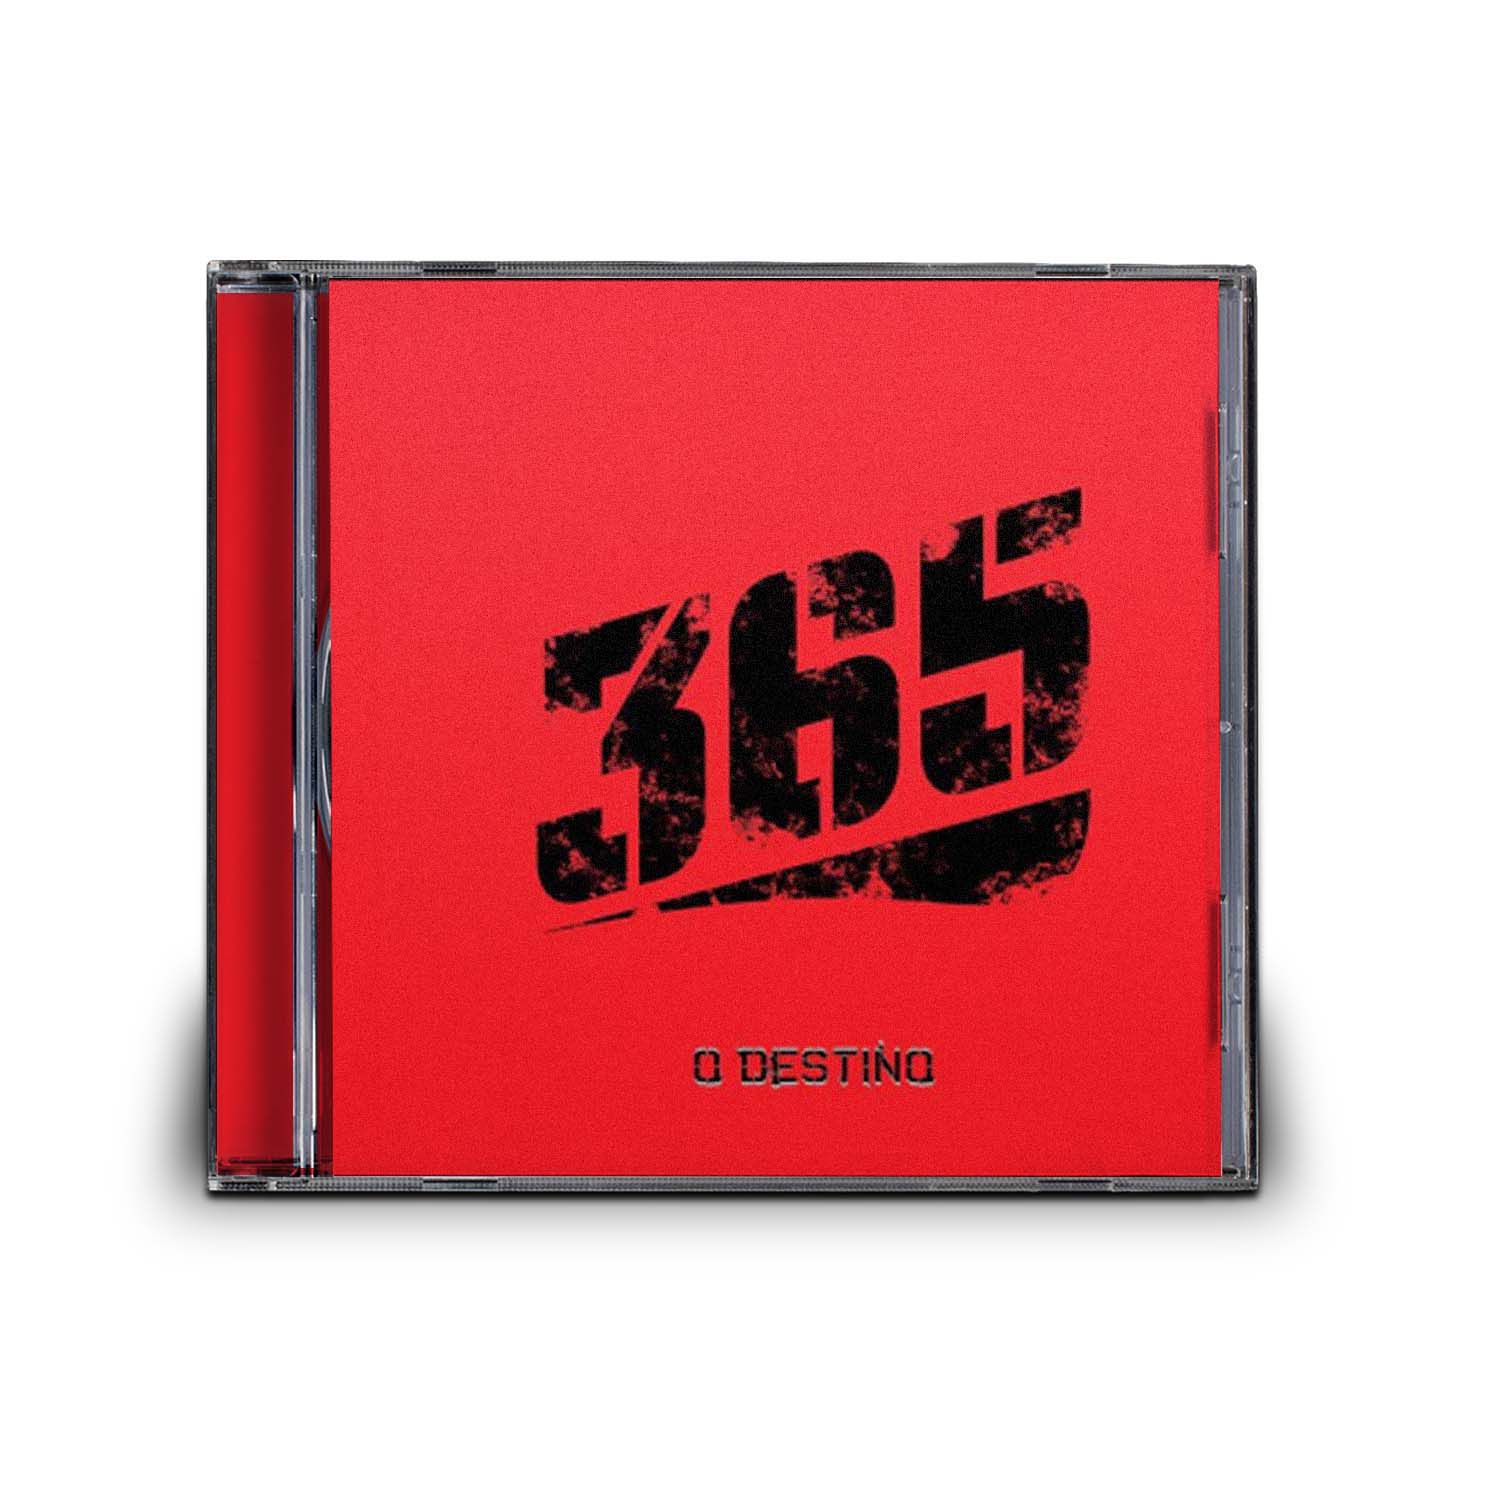 CD 365 - O DESTINO